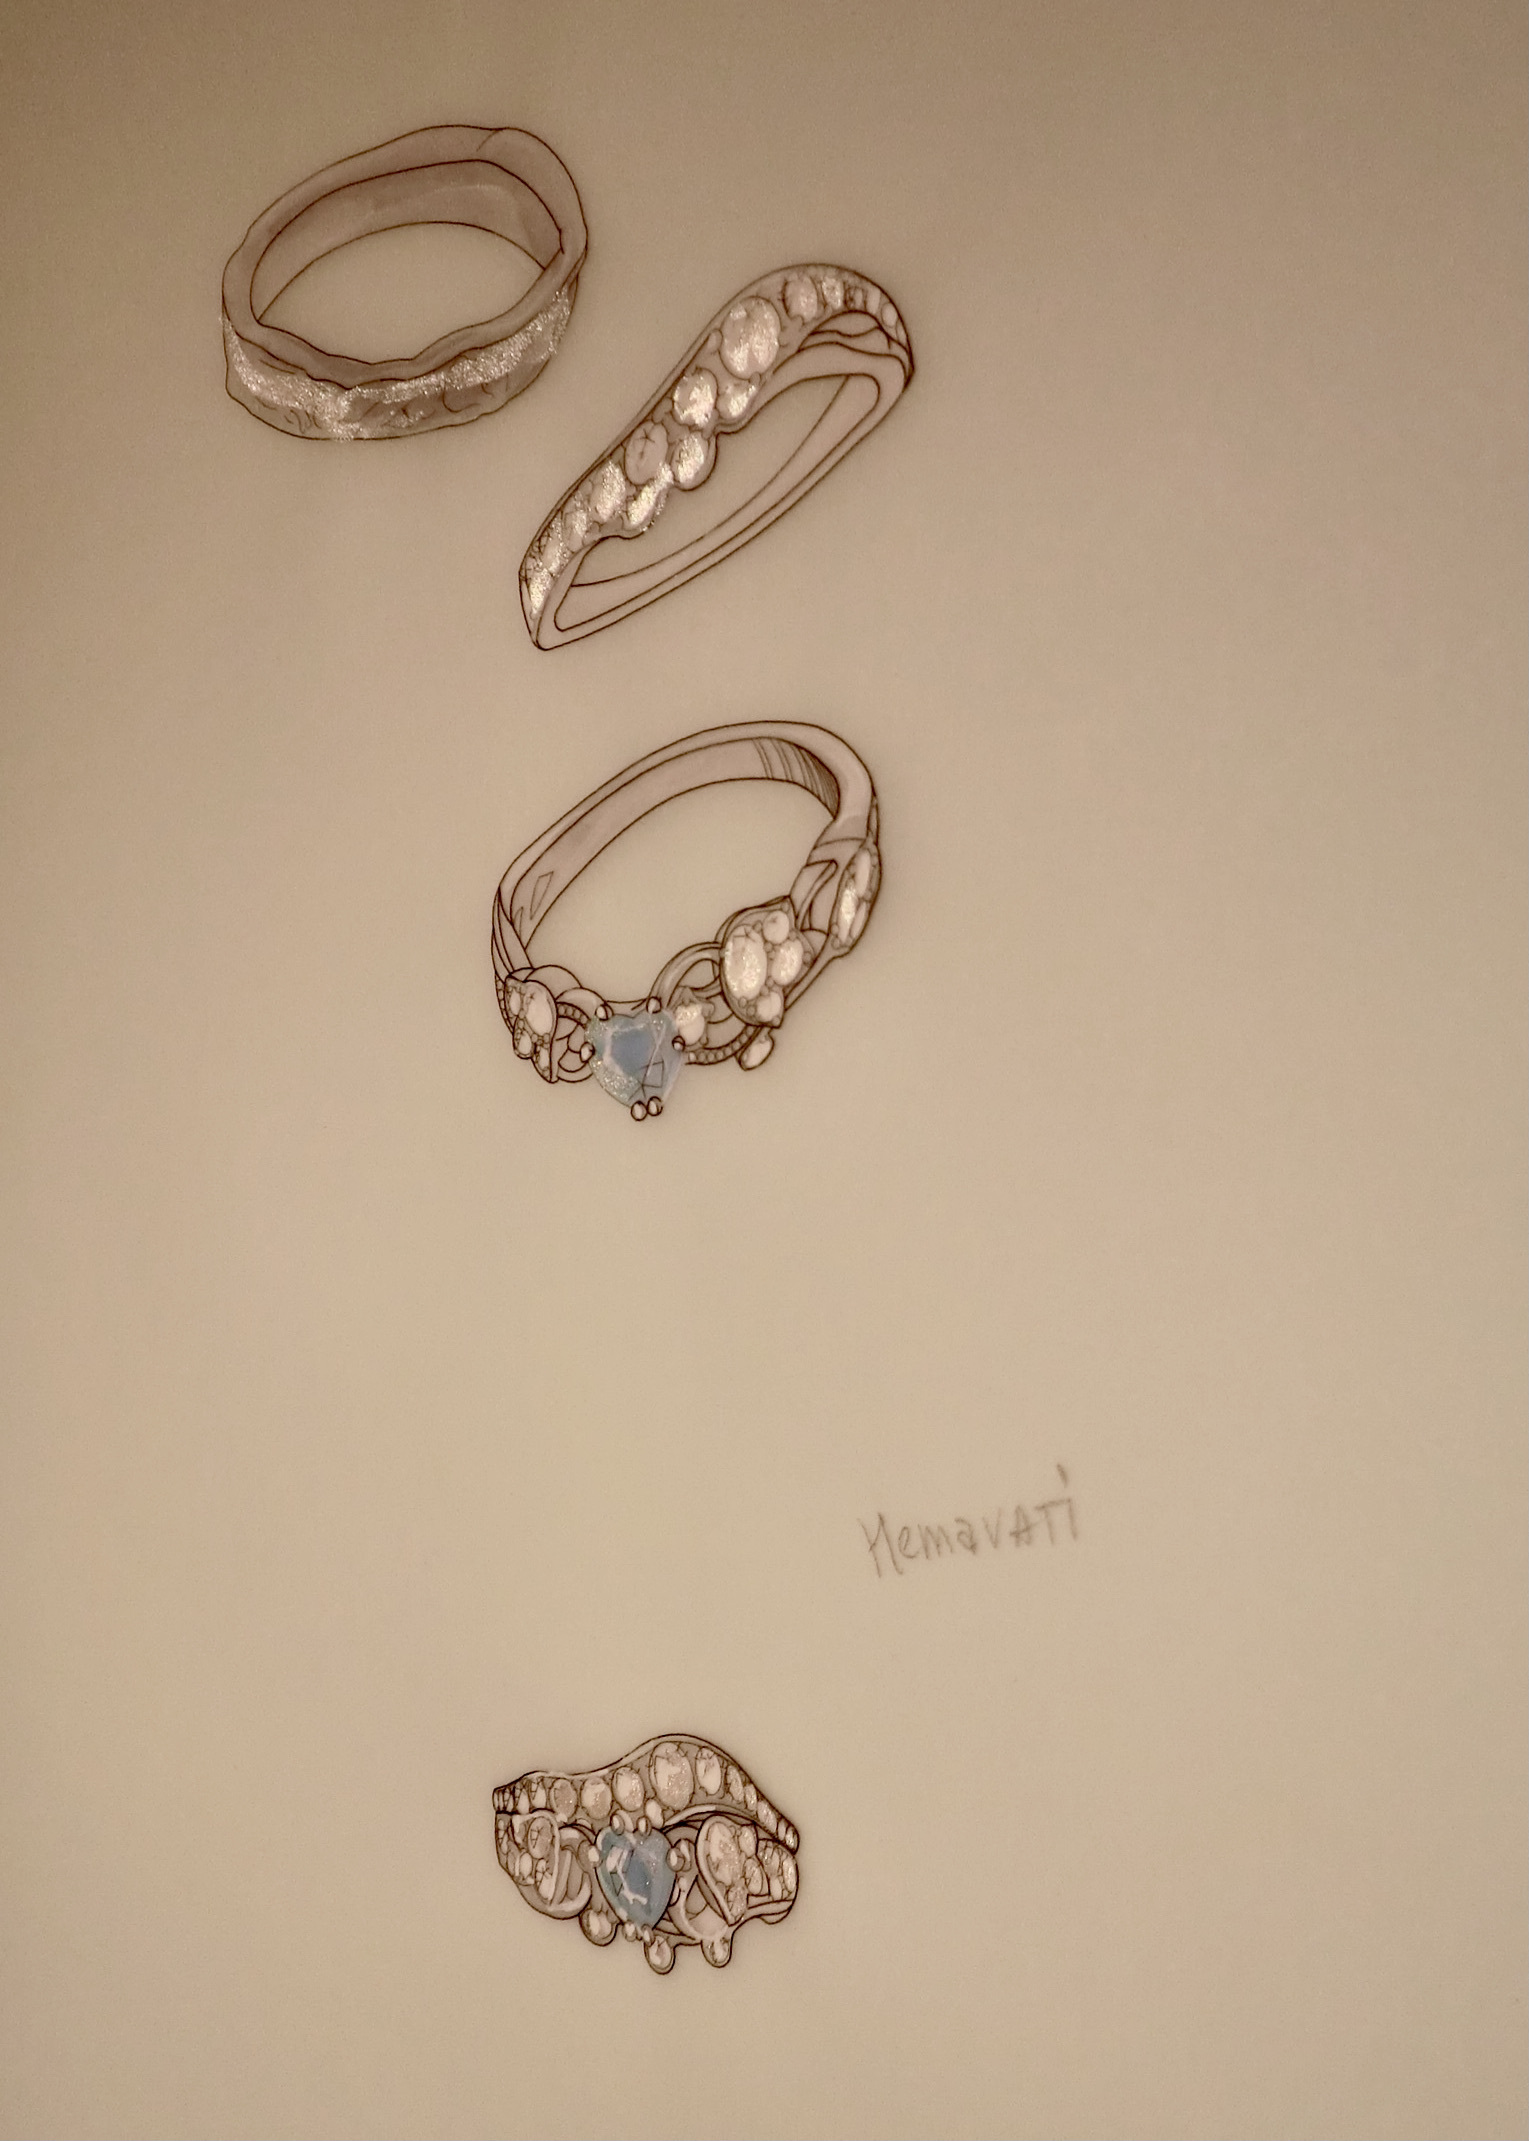 パライバトルマリンの婚約指輪 | Hemavati Jewelry